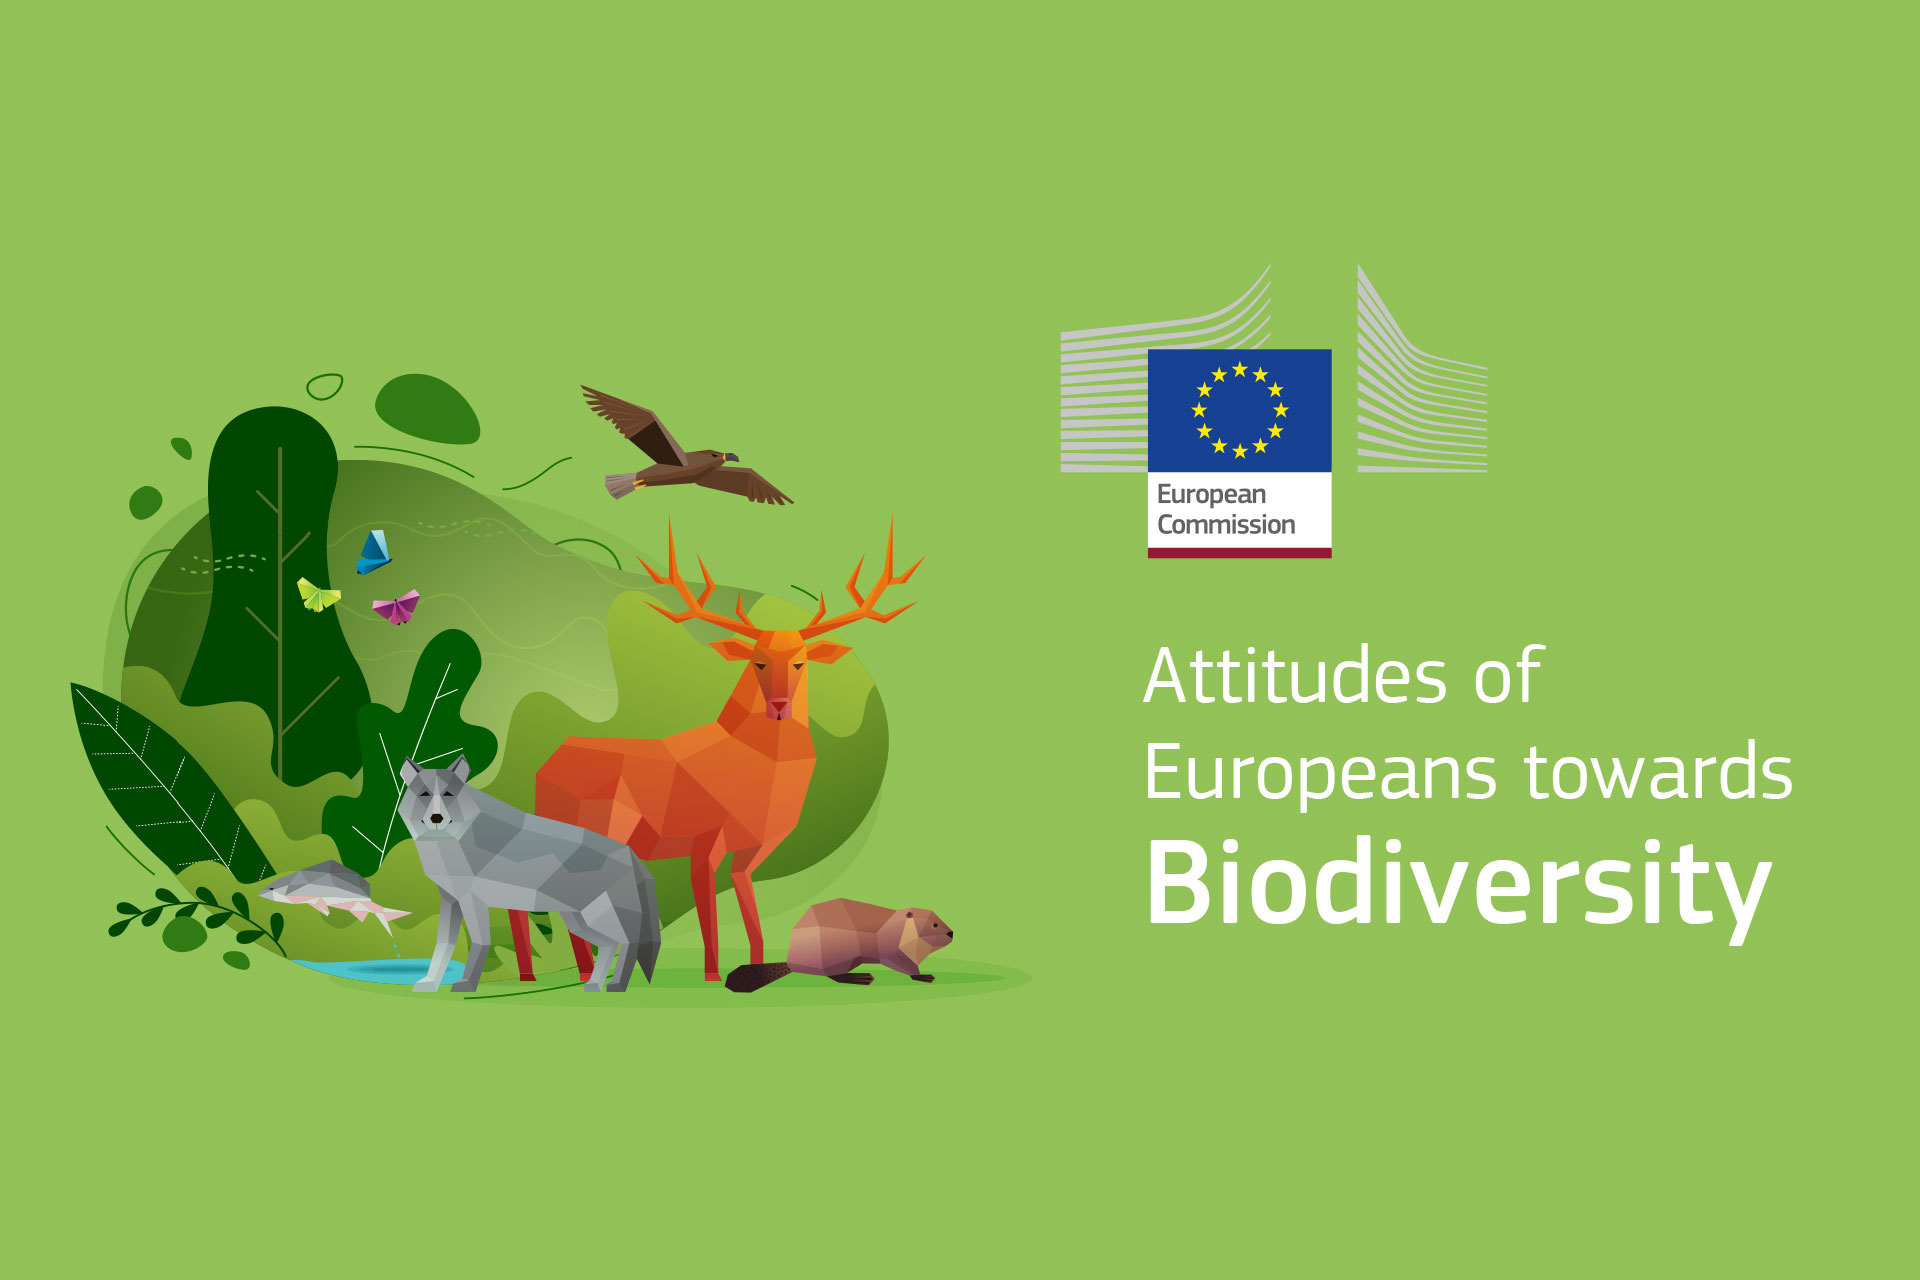 Aktuelle europaweite Umfrage zur Biodiversität